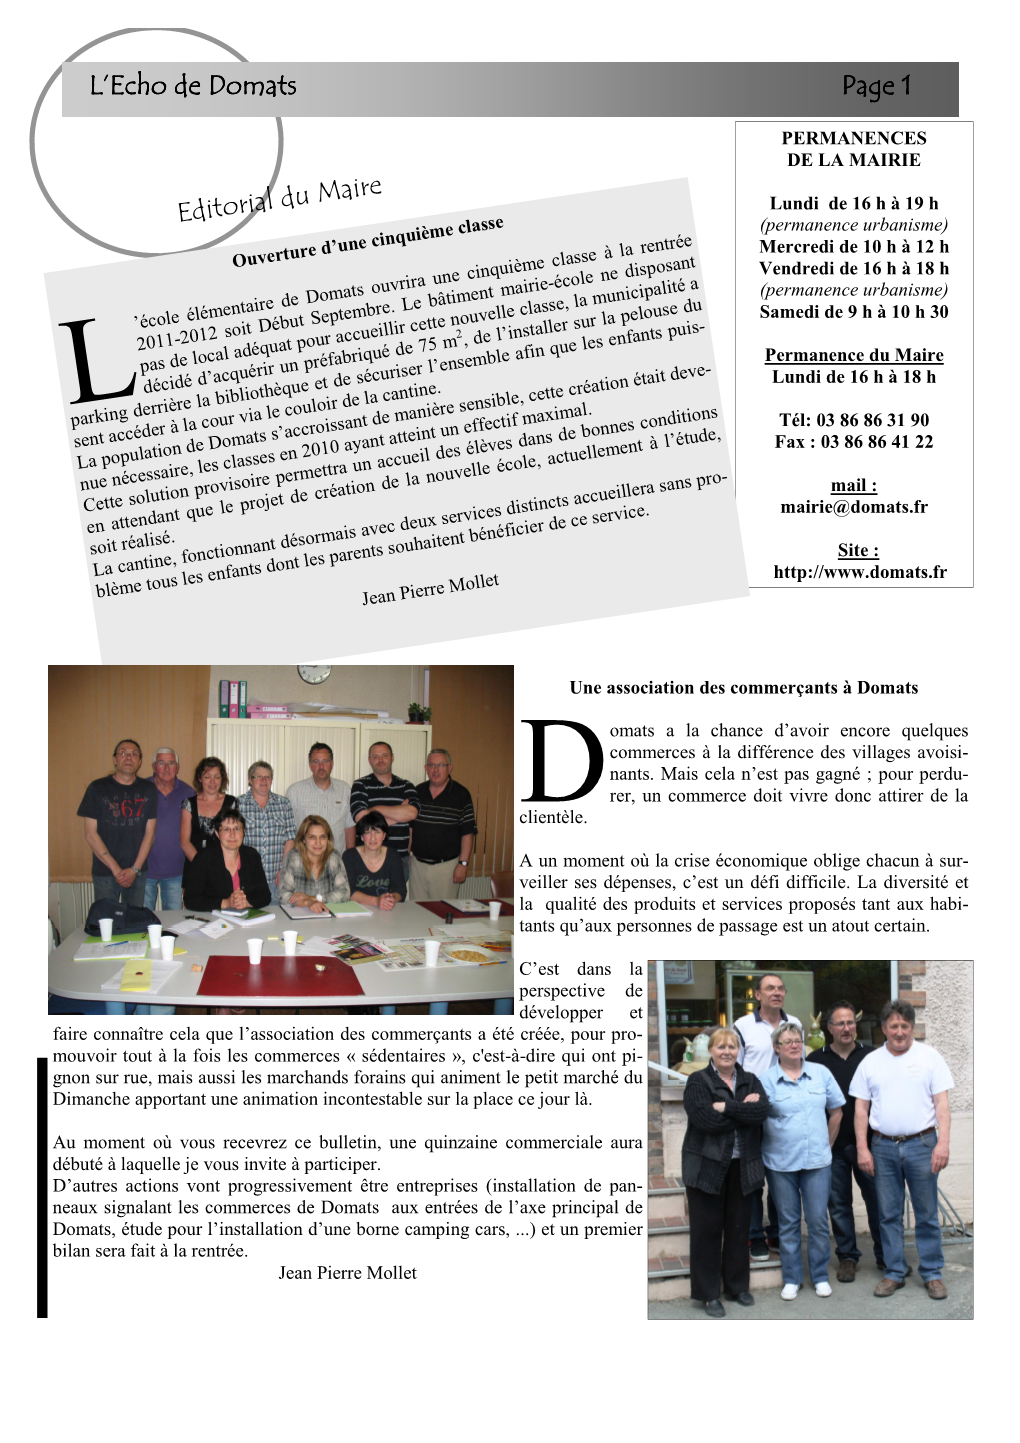 L'echo De Domats L'echo De Domats Page 1 Editorial Du Maire